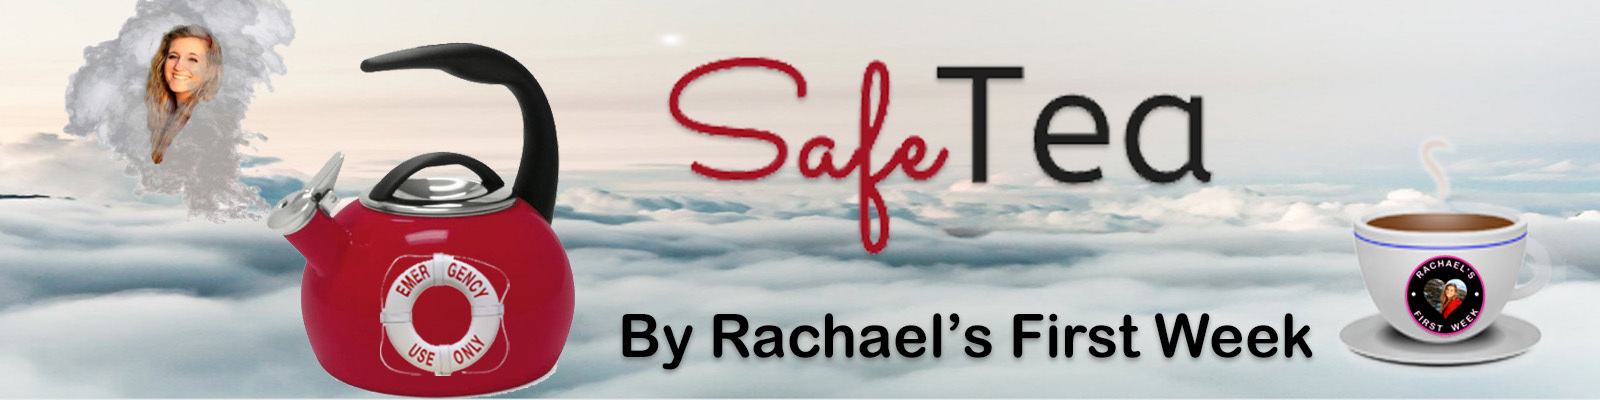 SafeTEA by Rachael’s First Week